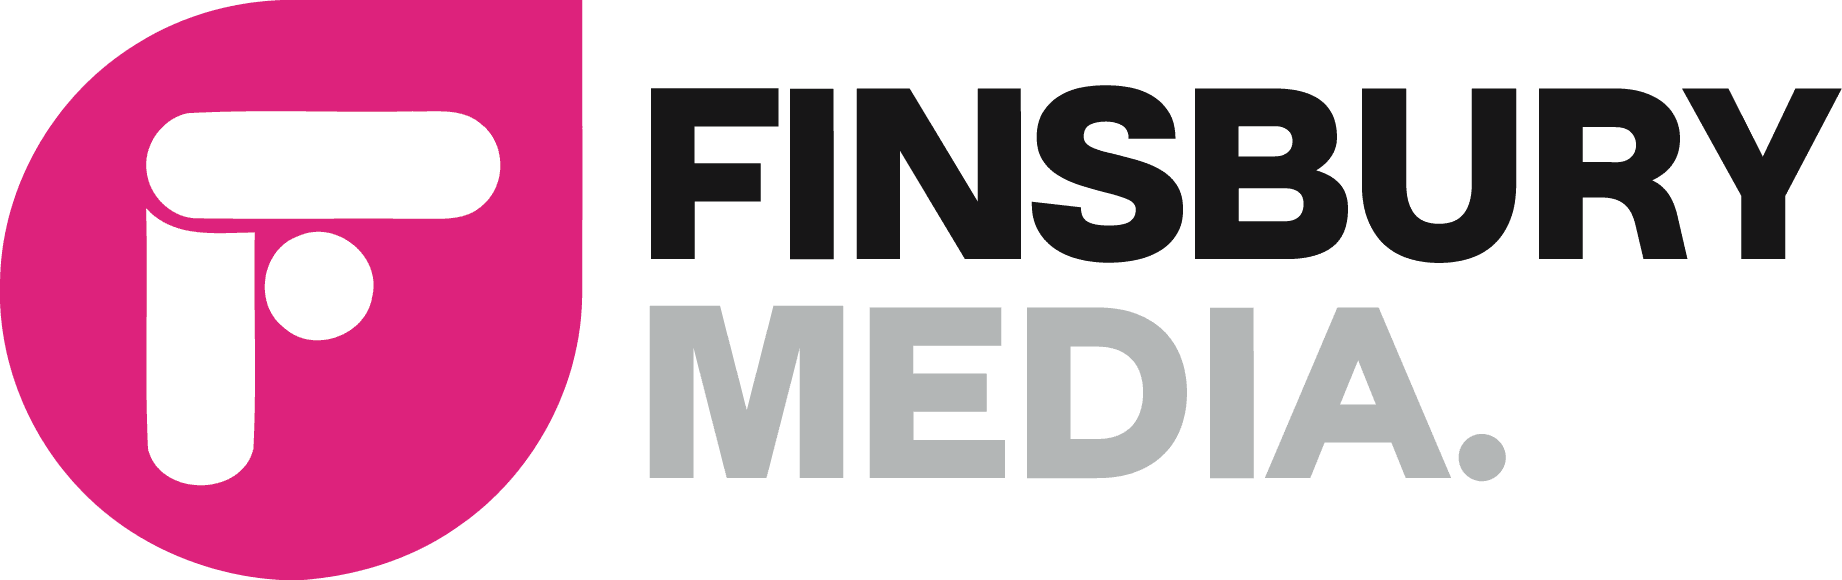 finsbury media